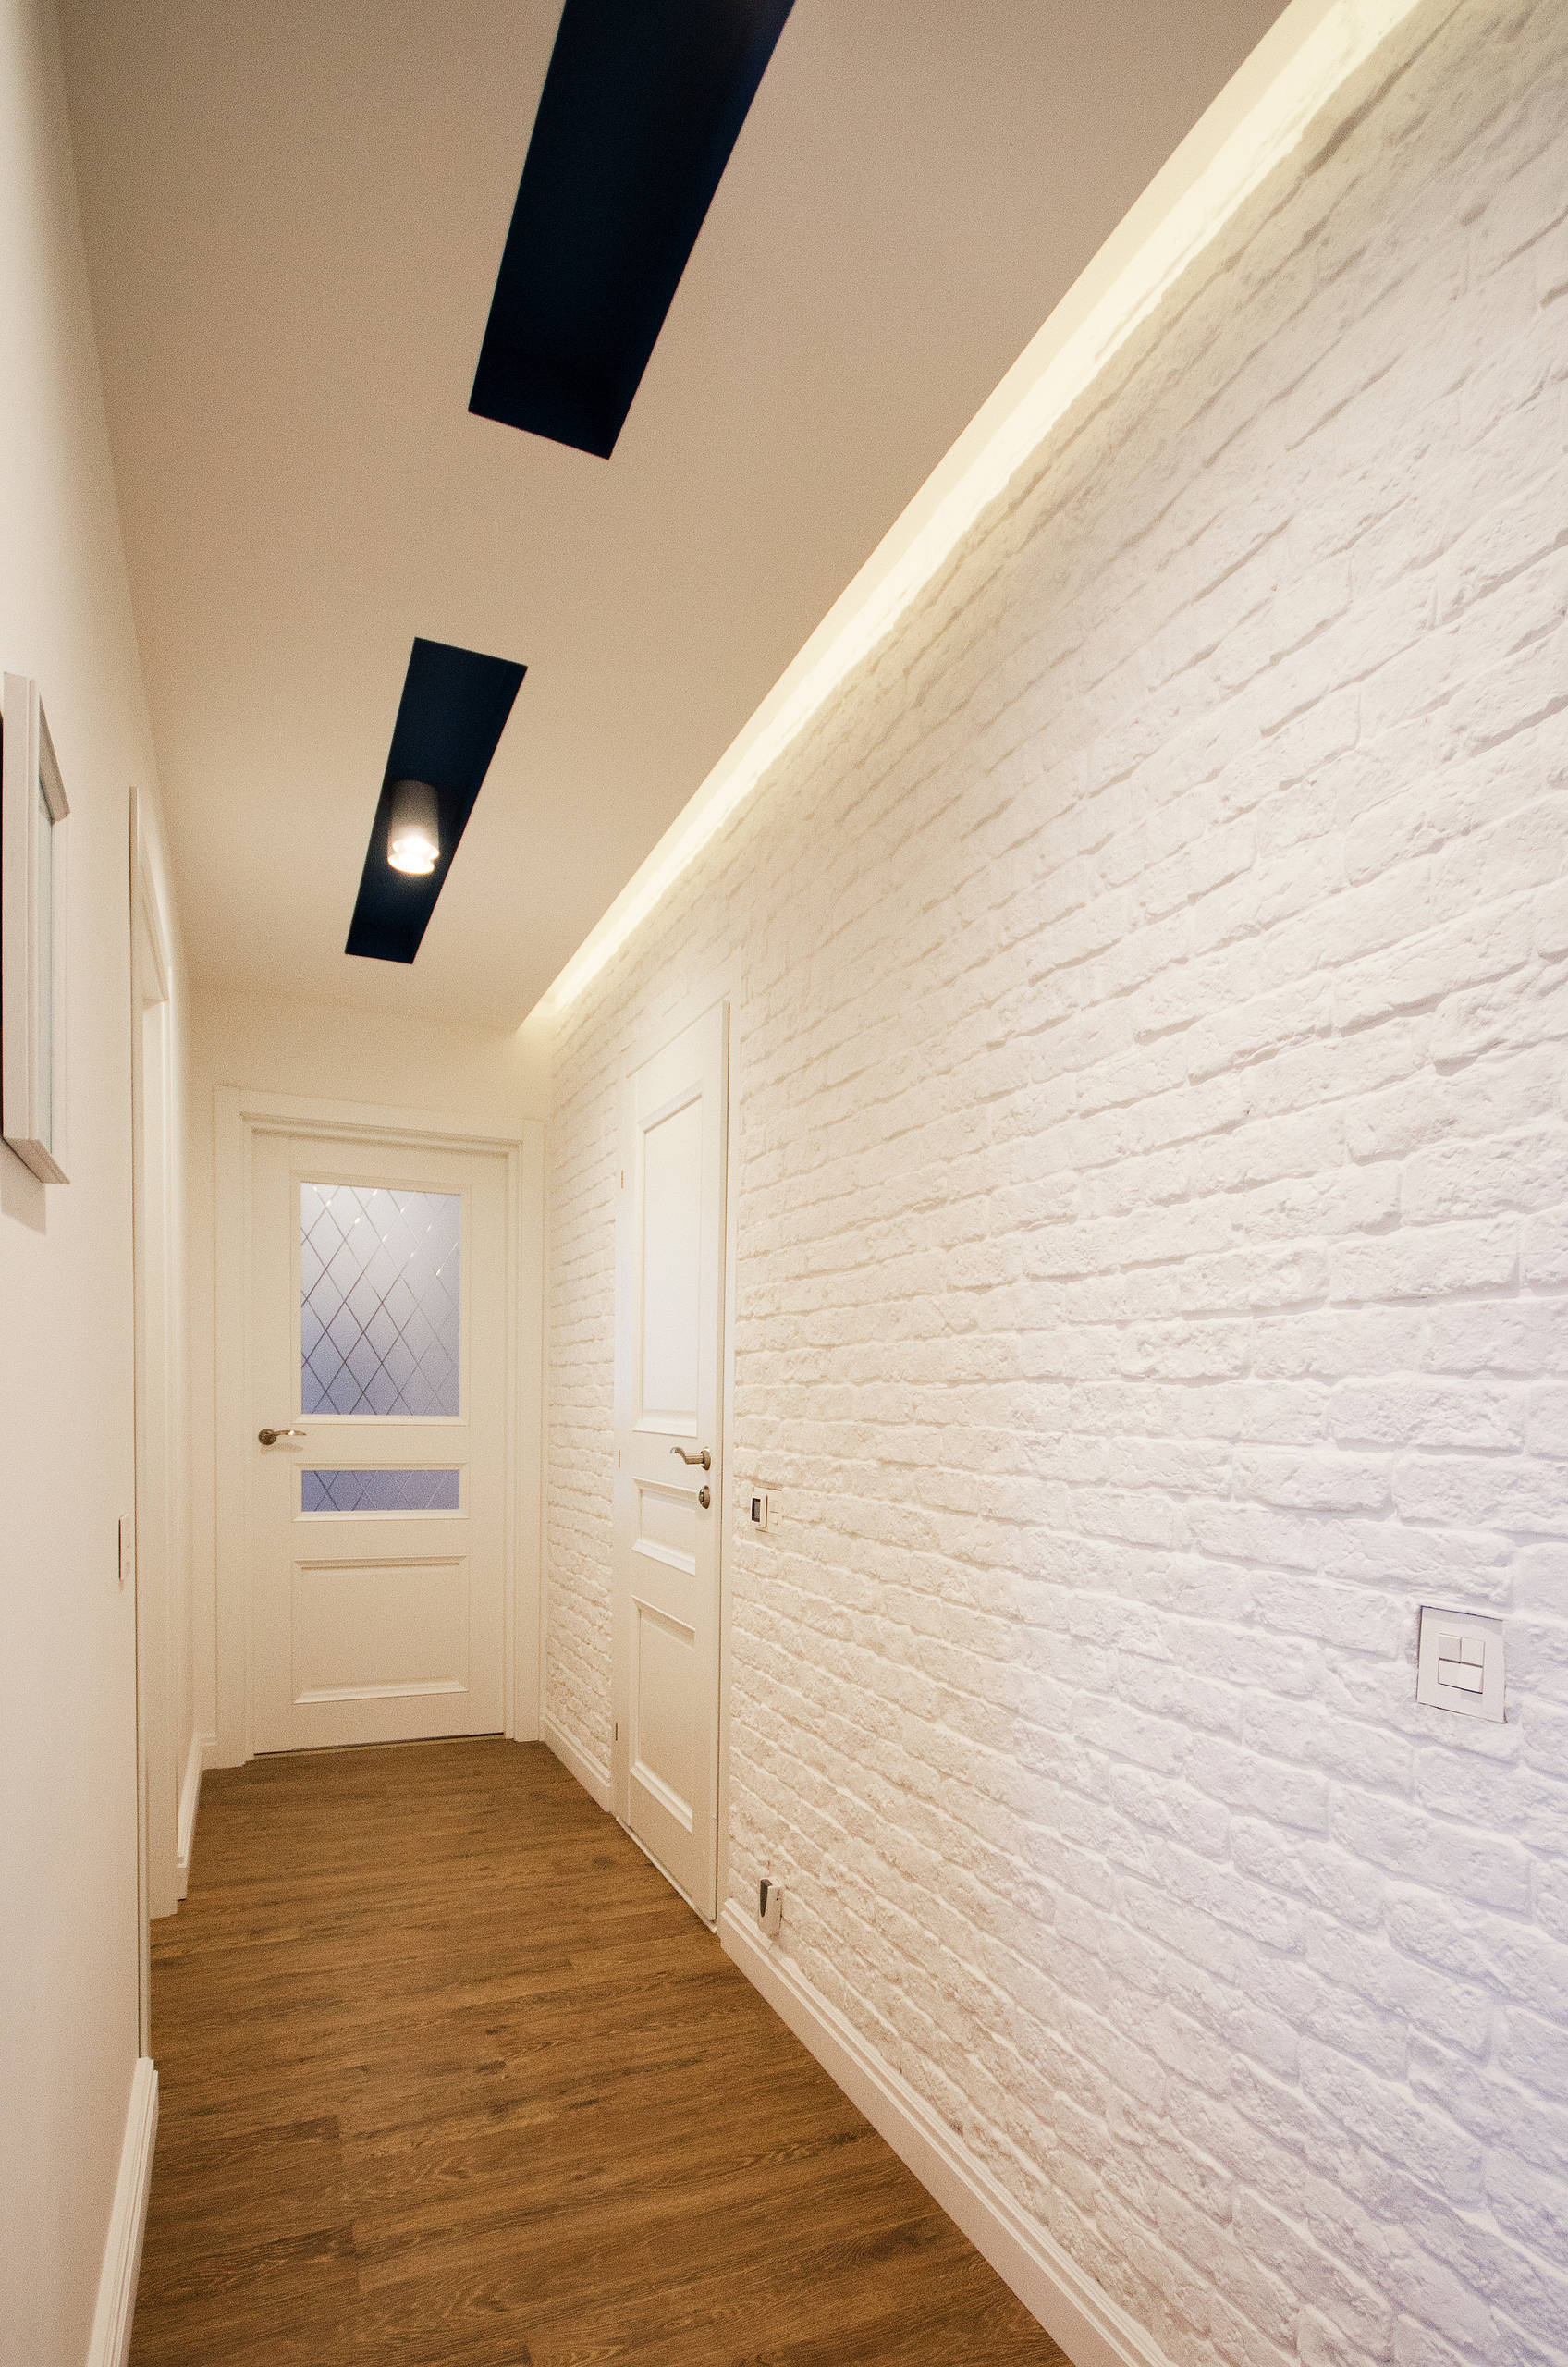 Интерьер коридора с нишей с подсветкой, световыми линиями, подсветкой настенной и подсветкой светодиодной в стиле фьюжн